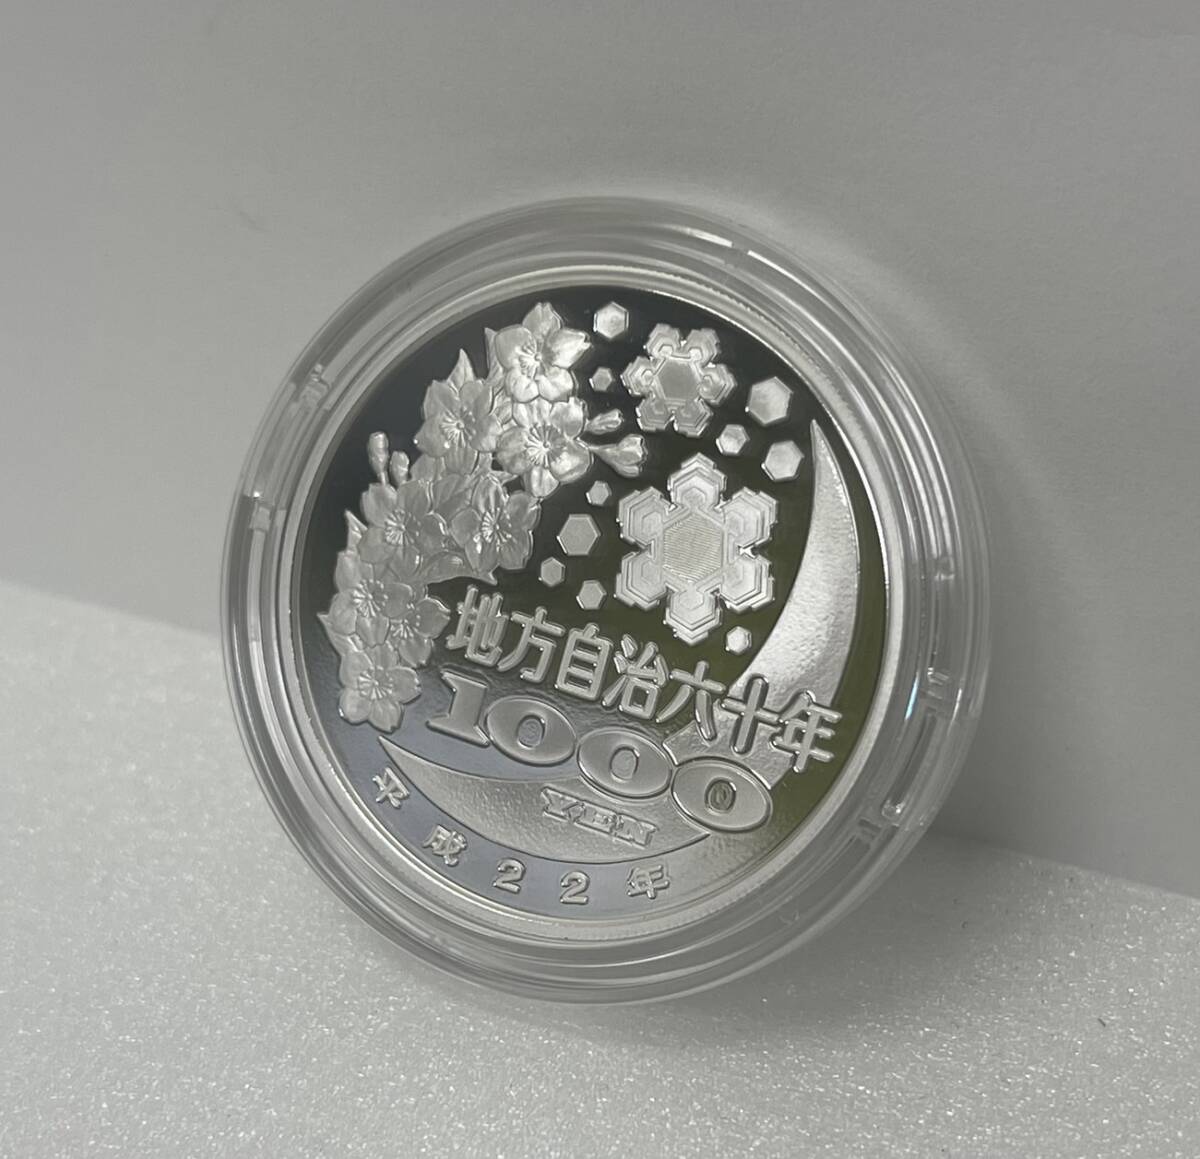 【ST18969MY】 неиспользуемый    Сага   местность   самоуправление  ... ...60 юбилей  1000  йен  серебряная монета  ... ... крыша  деньги (монета)  C комплект    воспоминание   серебряная монета    цвет  монета   монетный двор   1000  йен  серебряная монета  